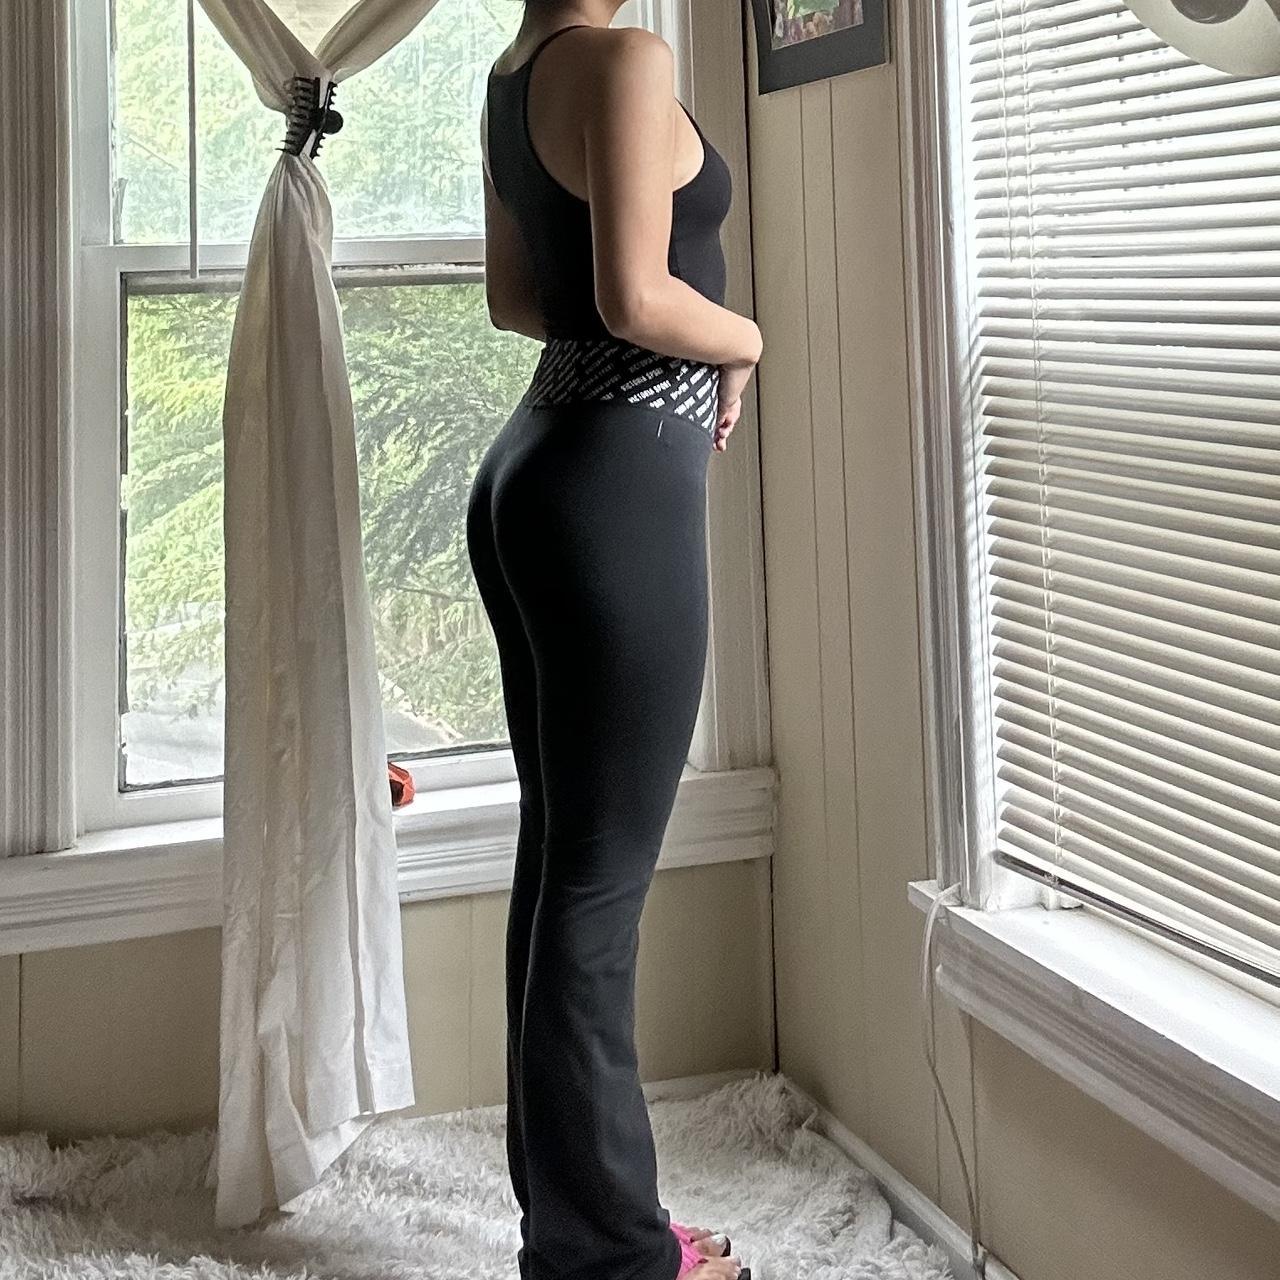 Victoria's Secret workout pants with mesh detail. - Depop